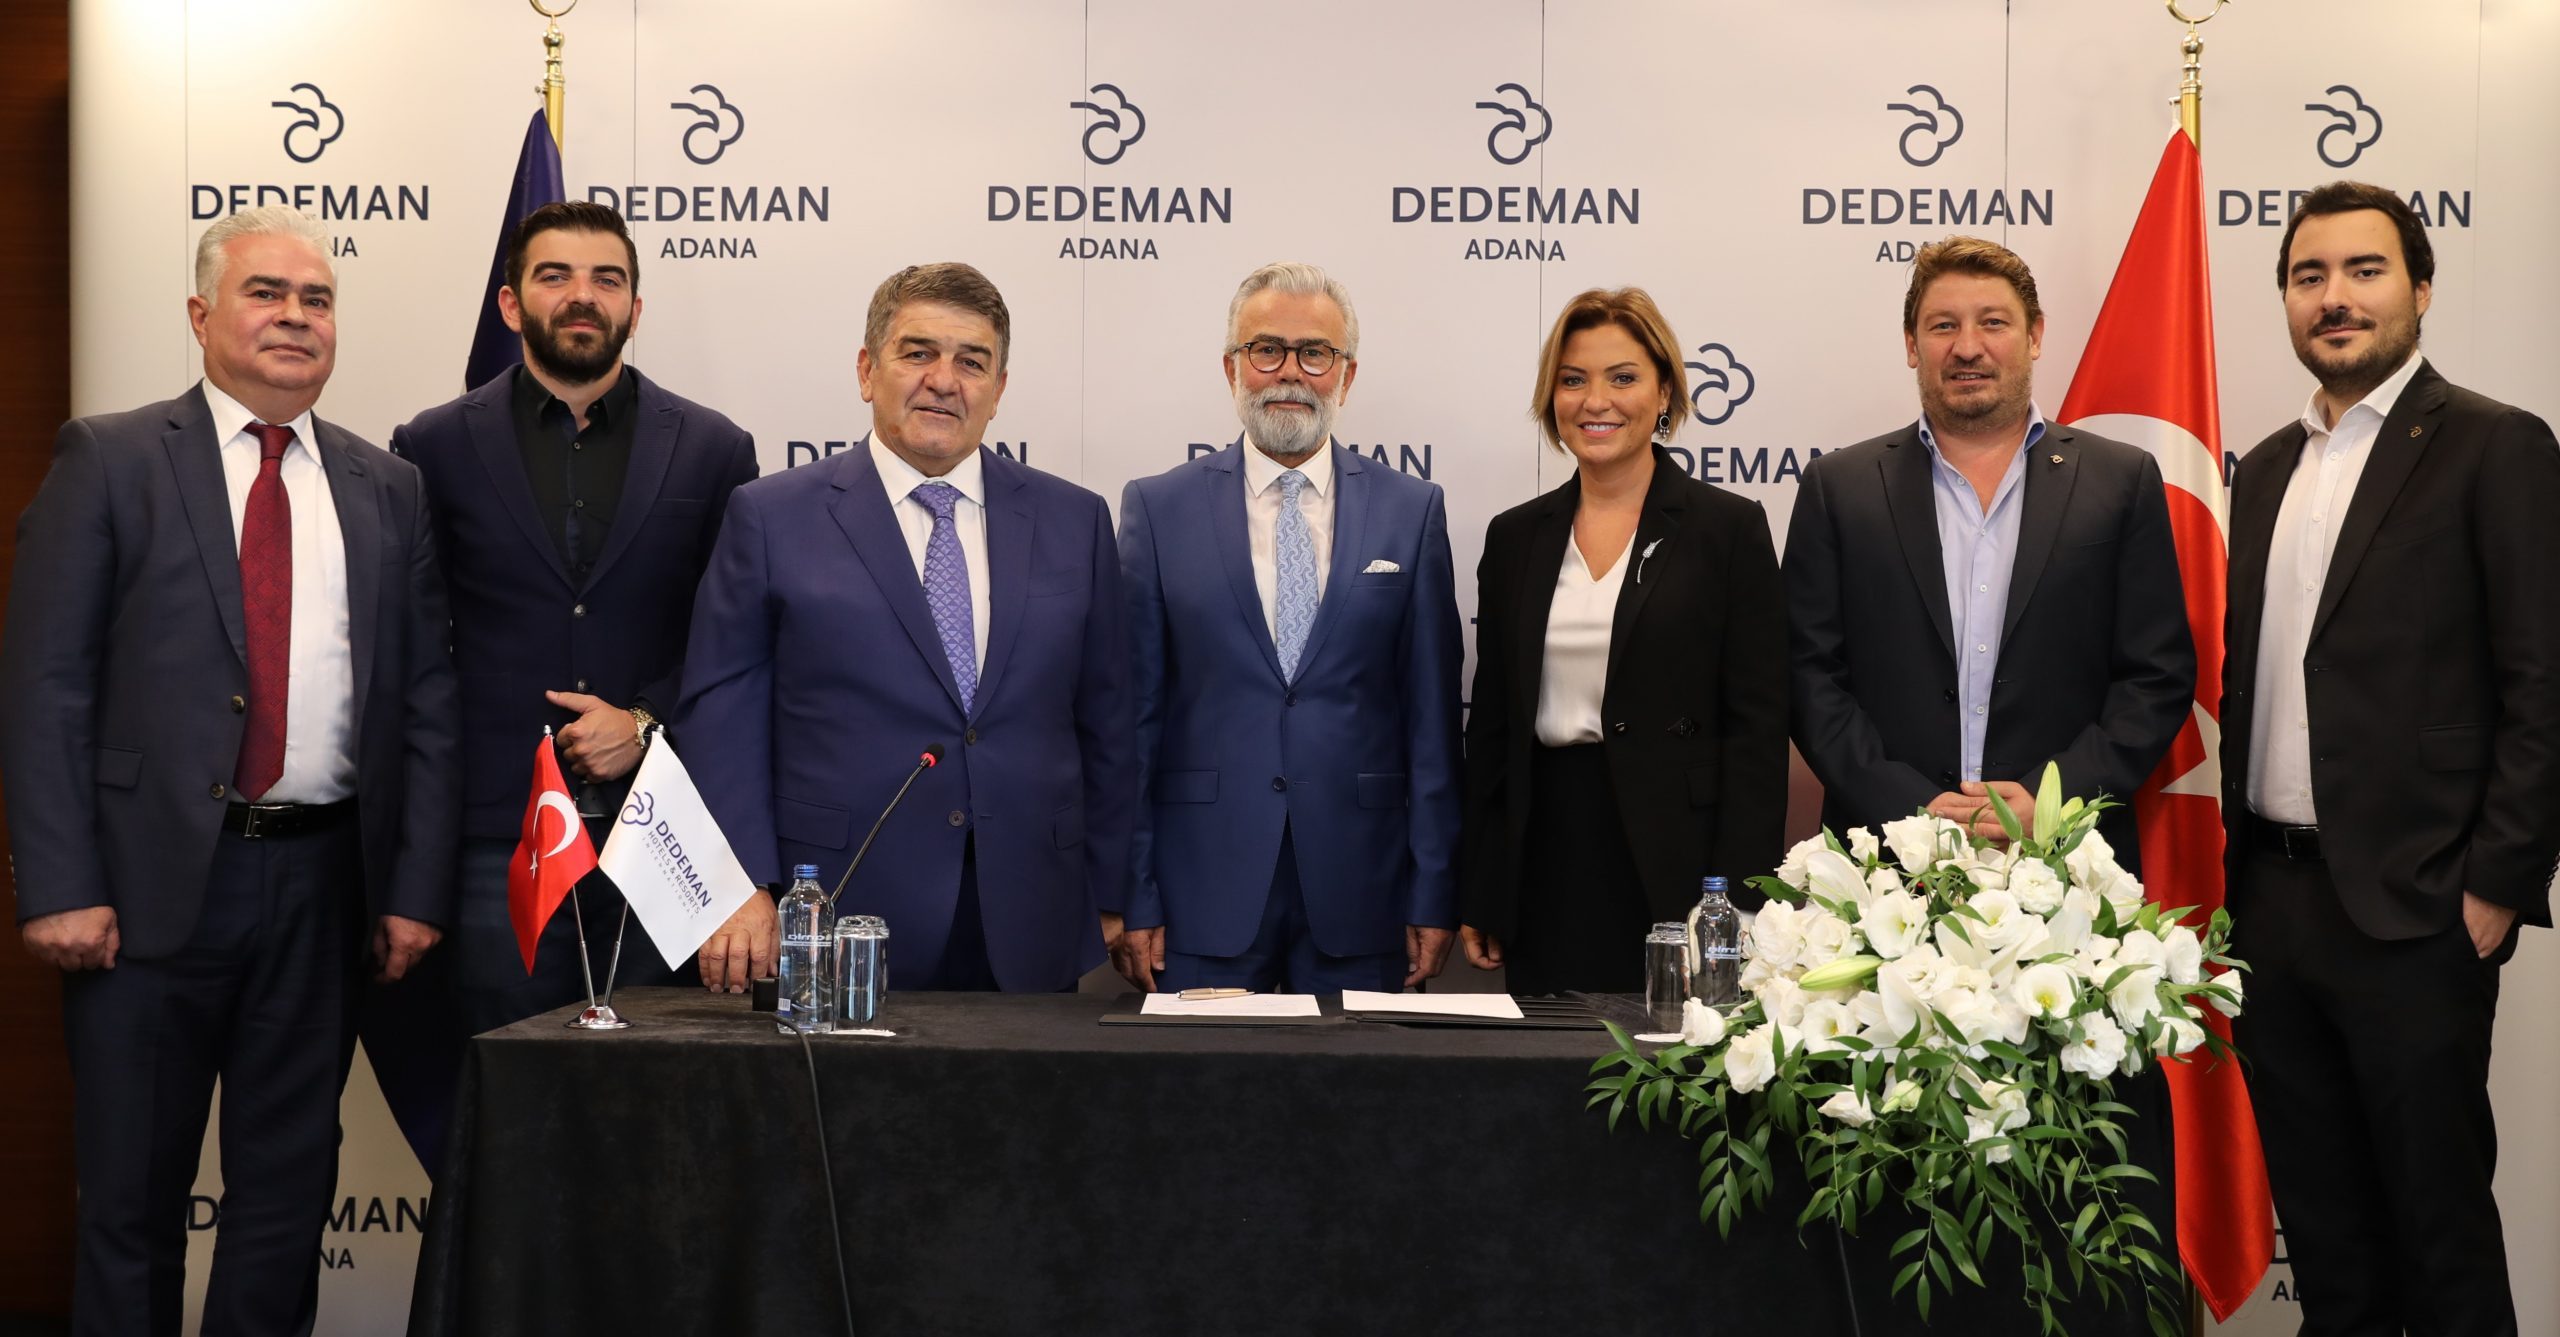 Dedeman Adana için imzalar atıldı: Açılış 2023 ikinci çeyrekte